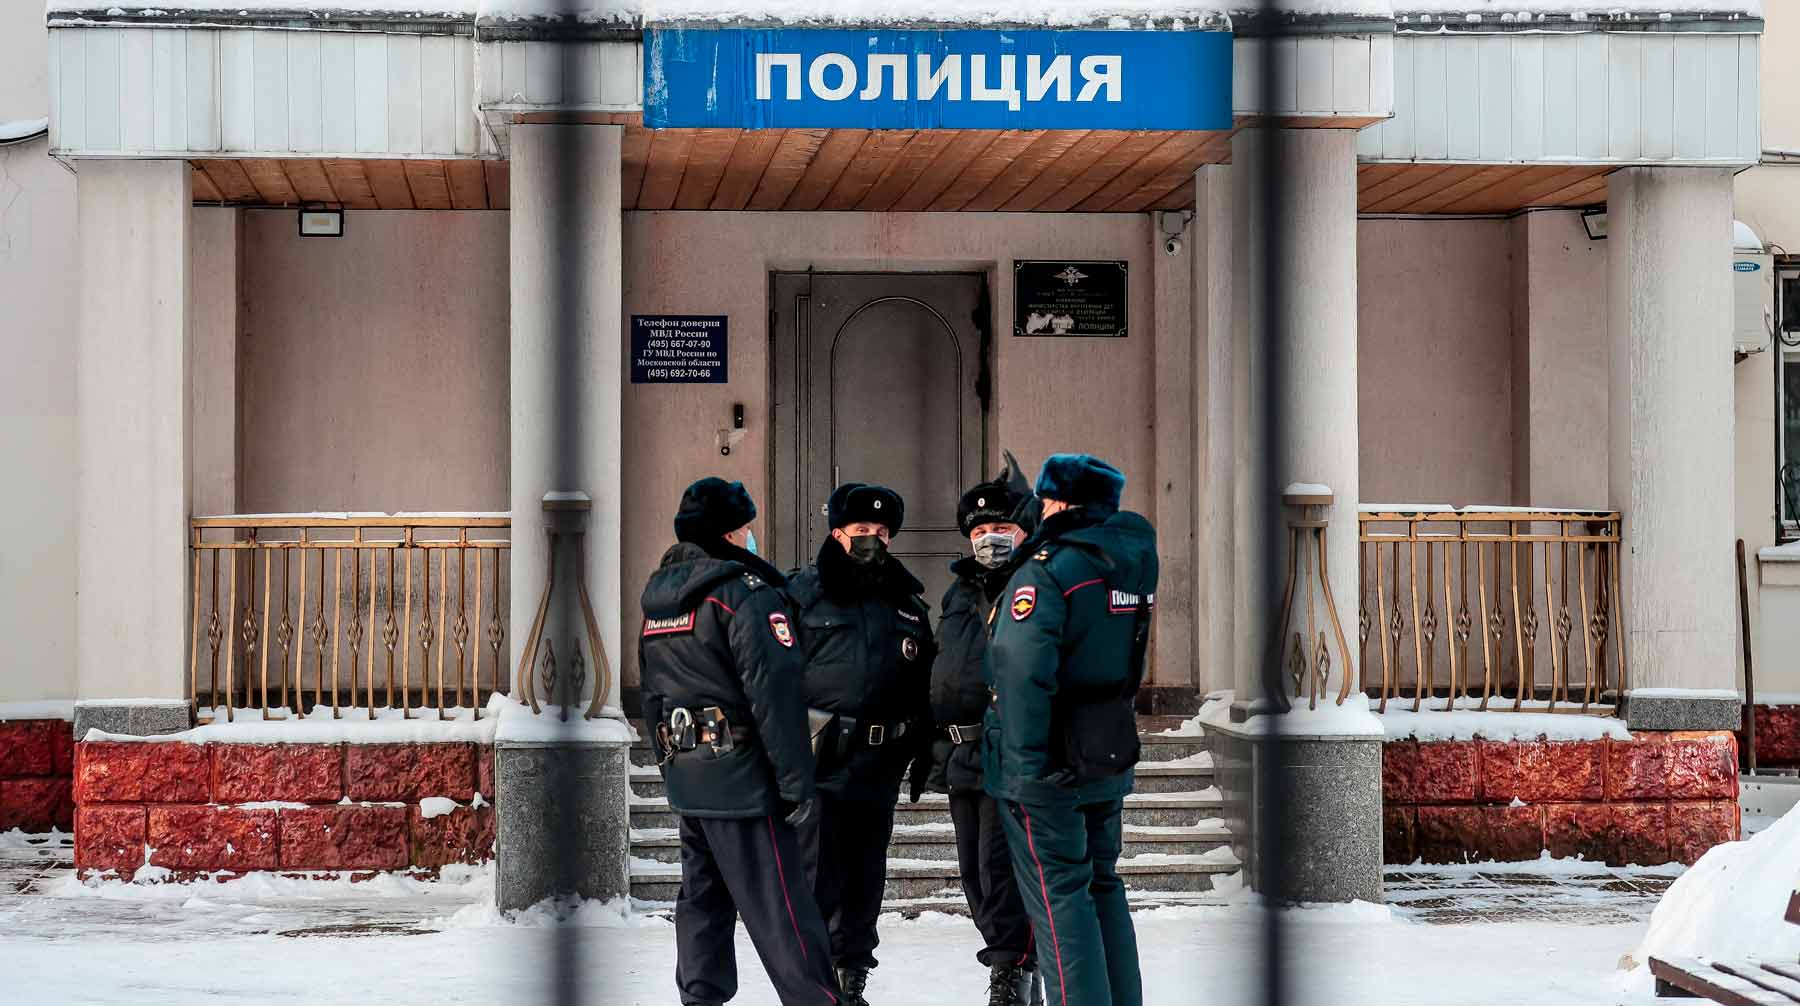 Злоумышленники представляются правоохранителями, чтобы украсть деньги Фото: © Global Look Press / Дмитрий Голубович